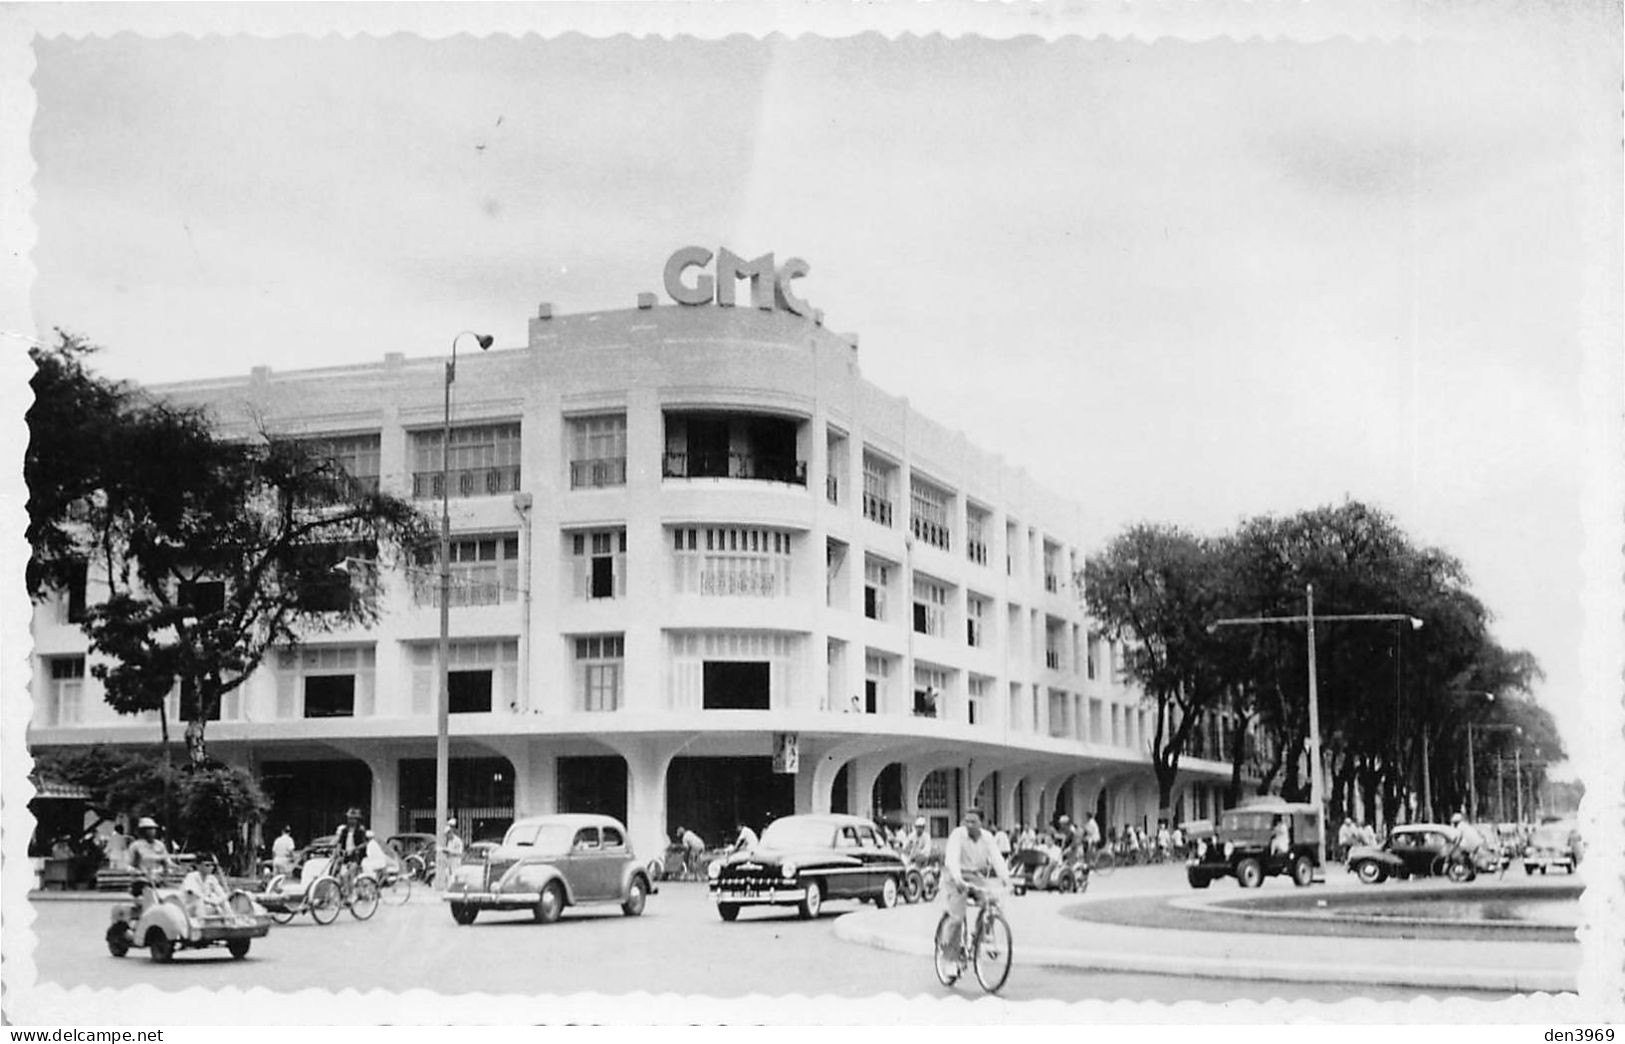 Viet-Nam - SAIGON (Hô Chi Minh-Ville) - Magasin Charner, GMC - Automobiles - Carte-Photo (2 Scans) - Vietnam